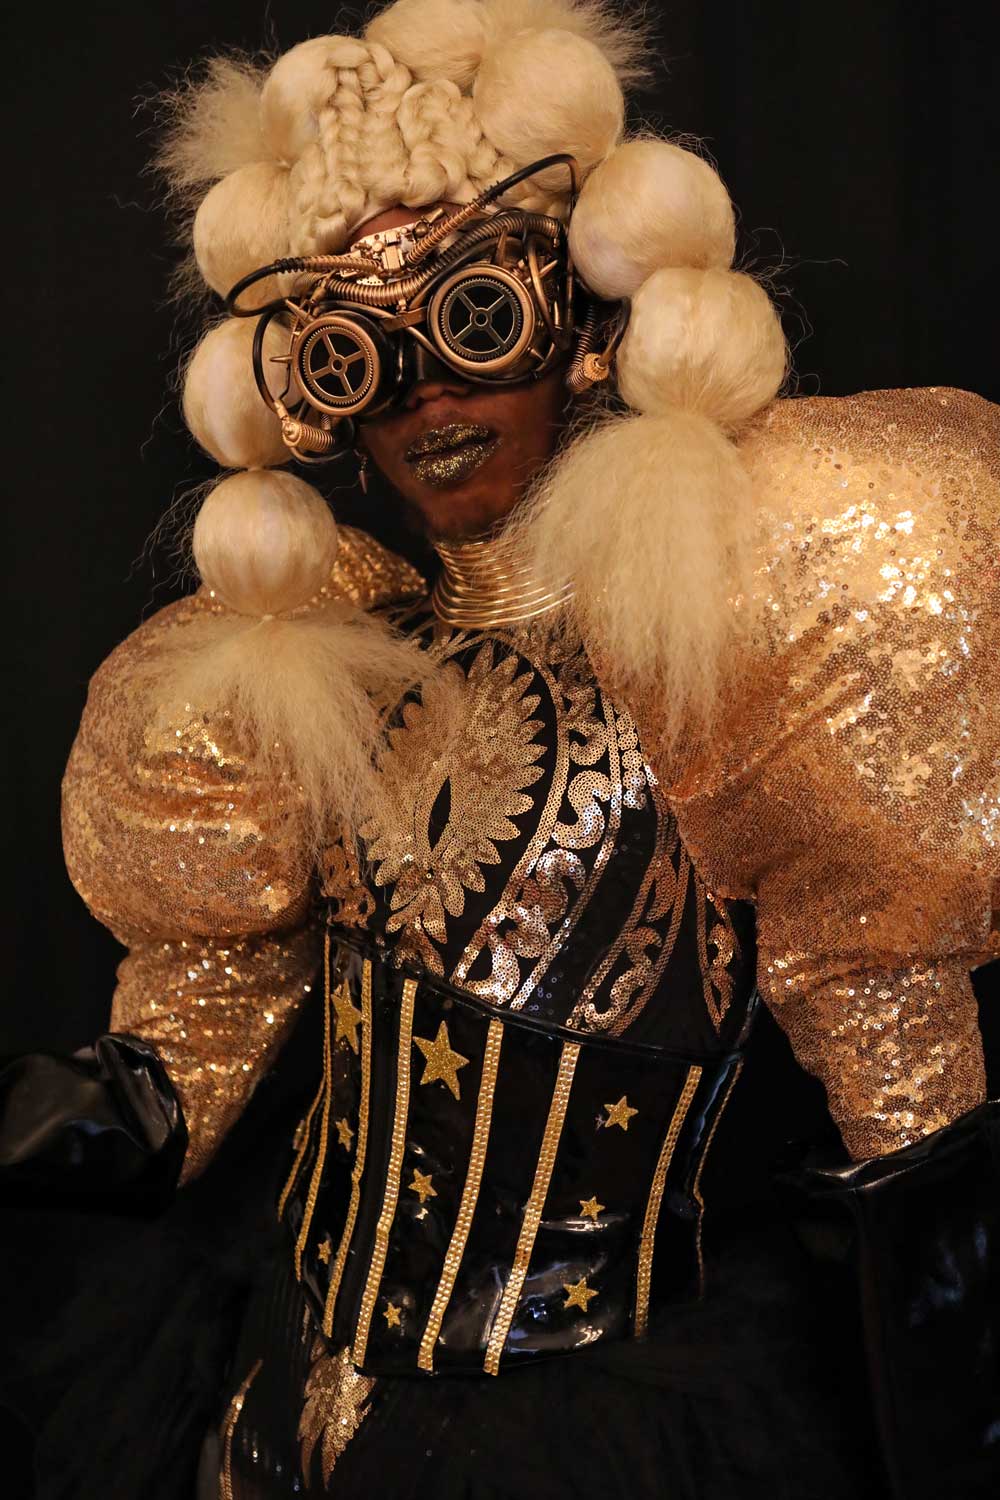 A performer in a futuristic costume